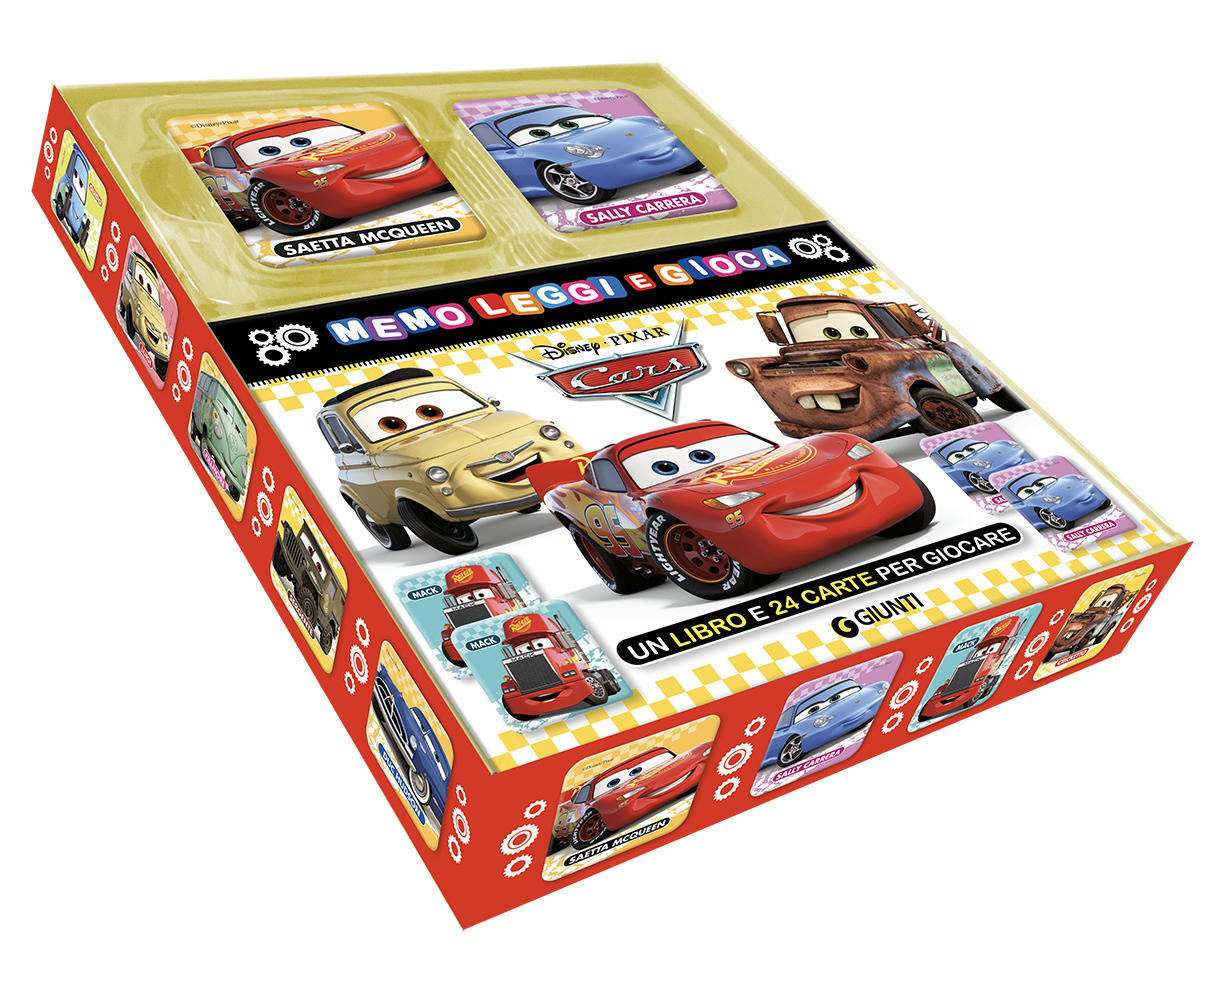 Cars Memo Leggi e Gioca::Un libro e 24 carte per giocare